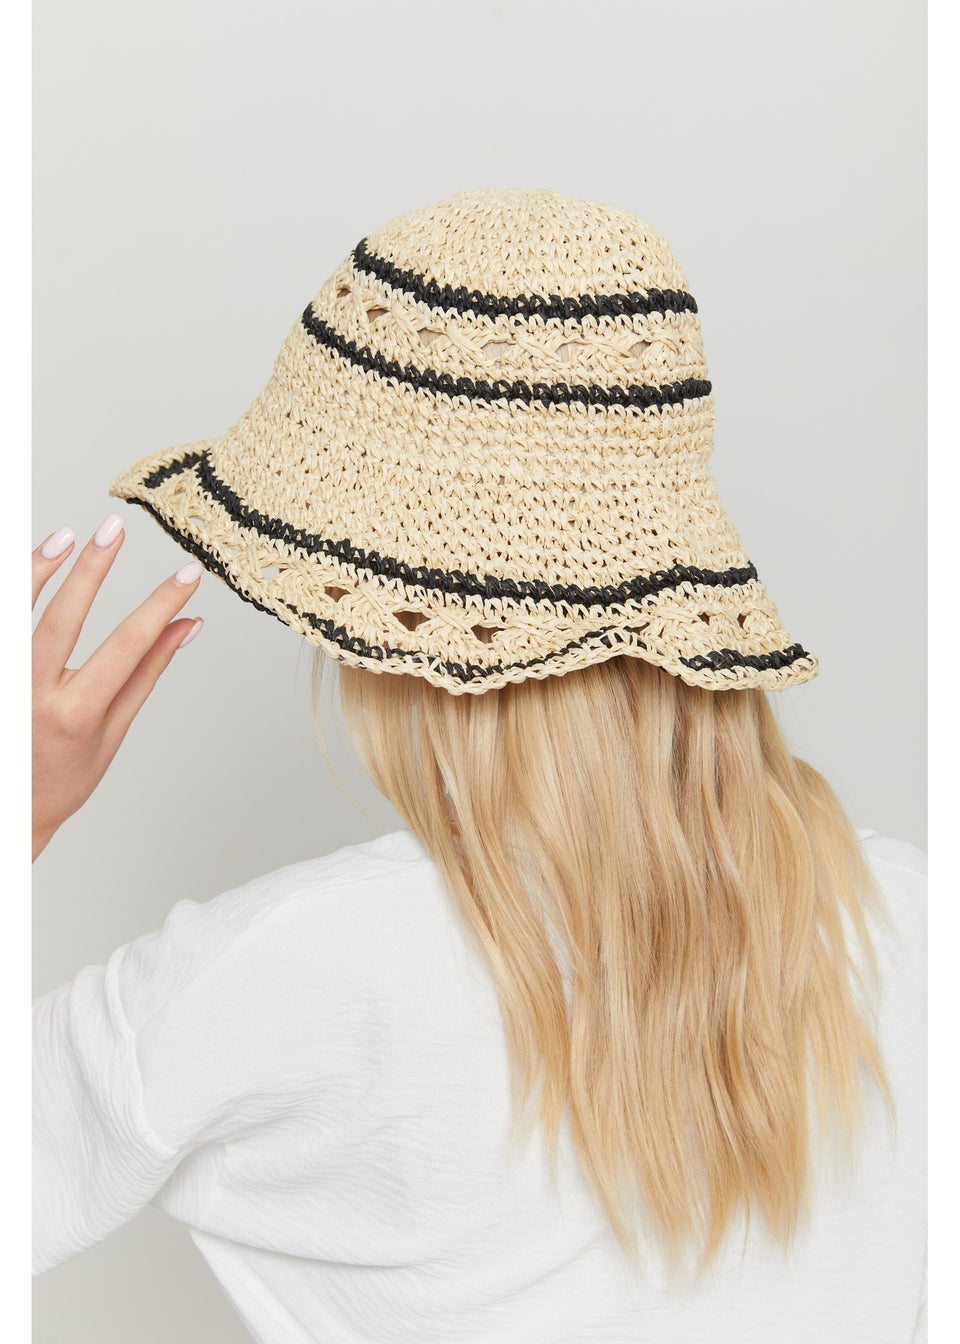 Madein Straw Striped Bucket Hat